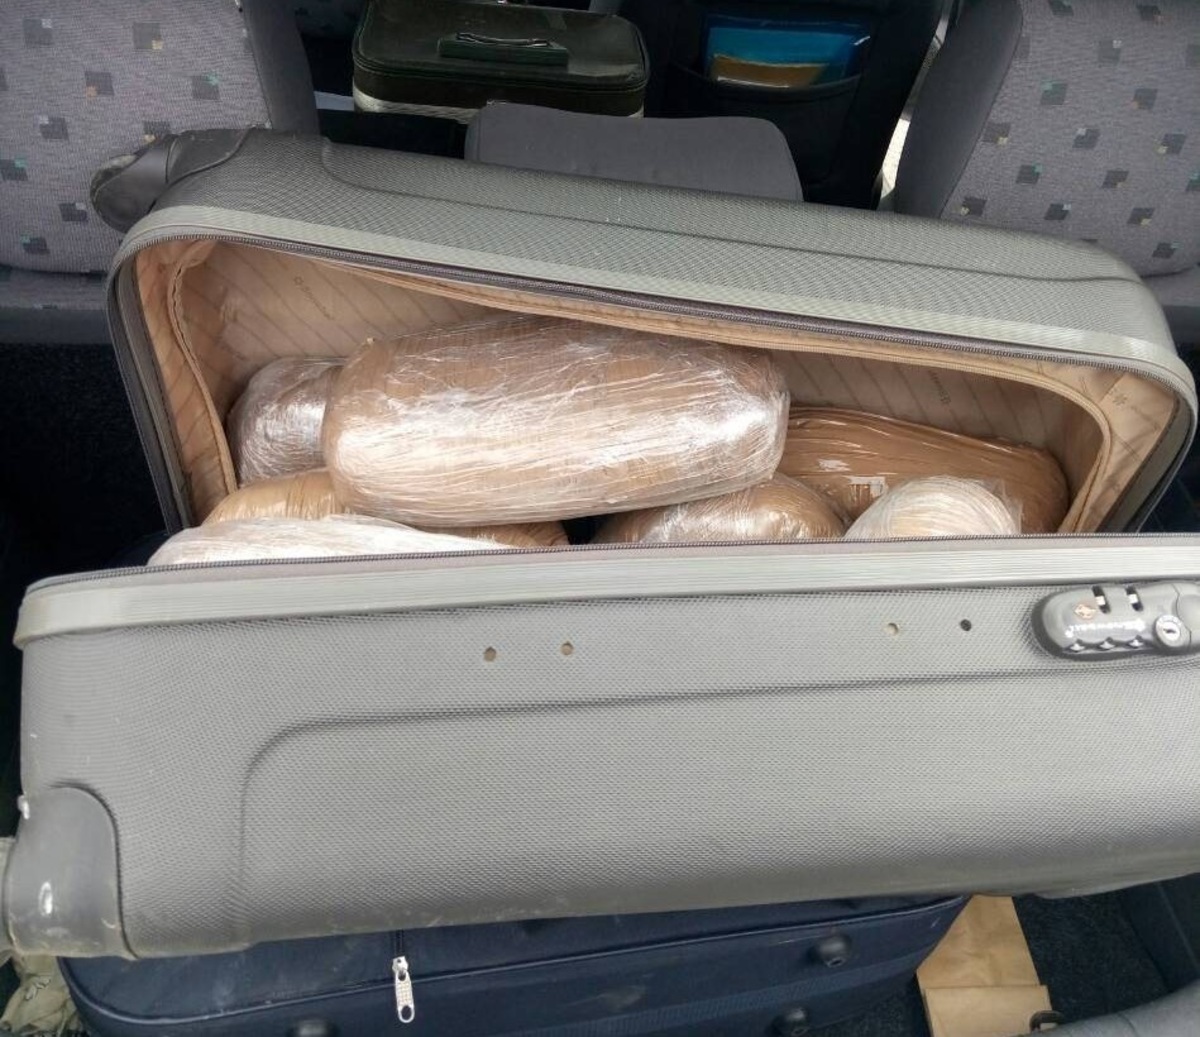 Θεσπρωτία: Έκρυβε στις βαλίτσες της 27 κιλά κάνναβης! [pics]